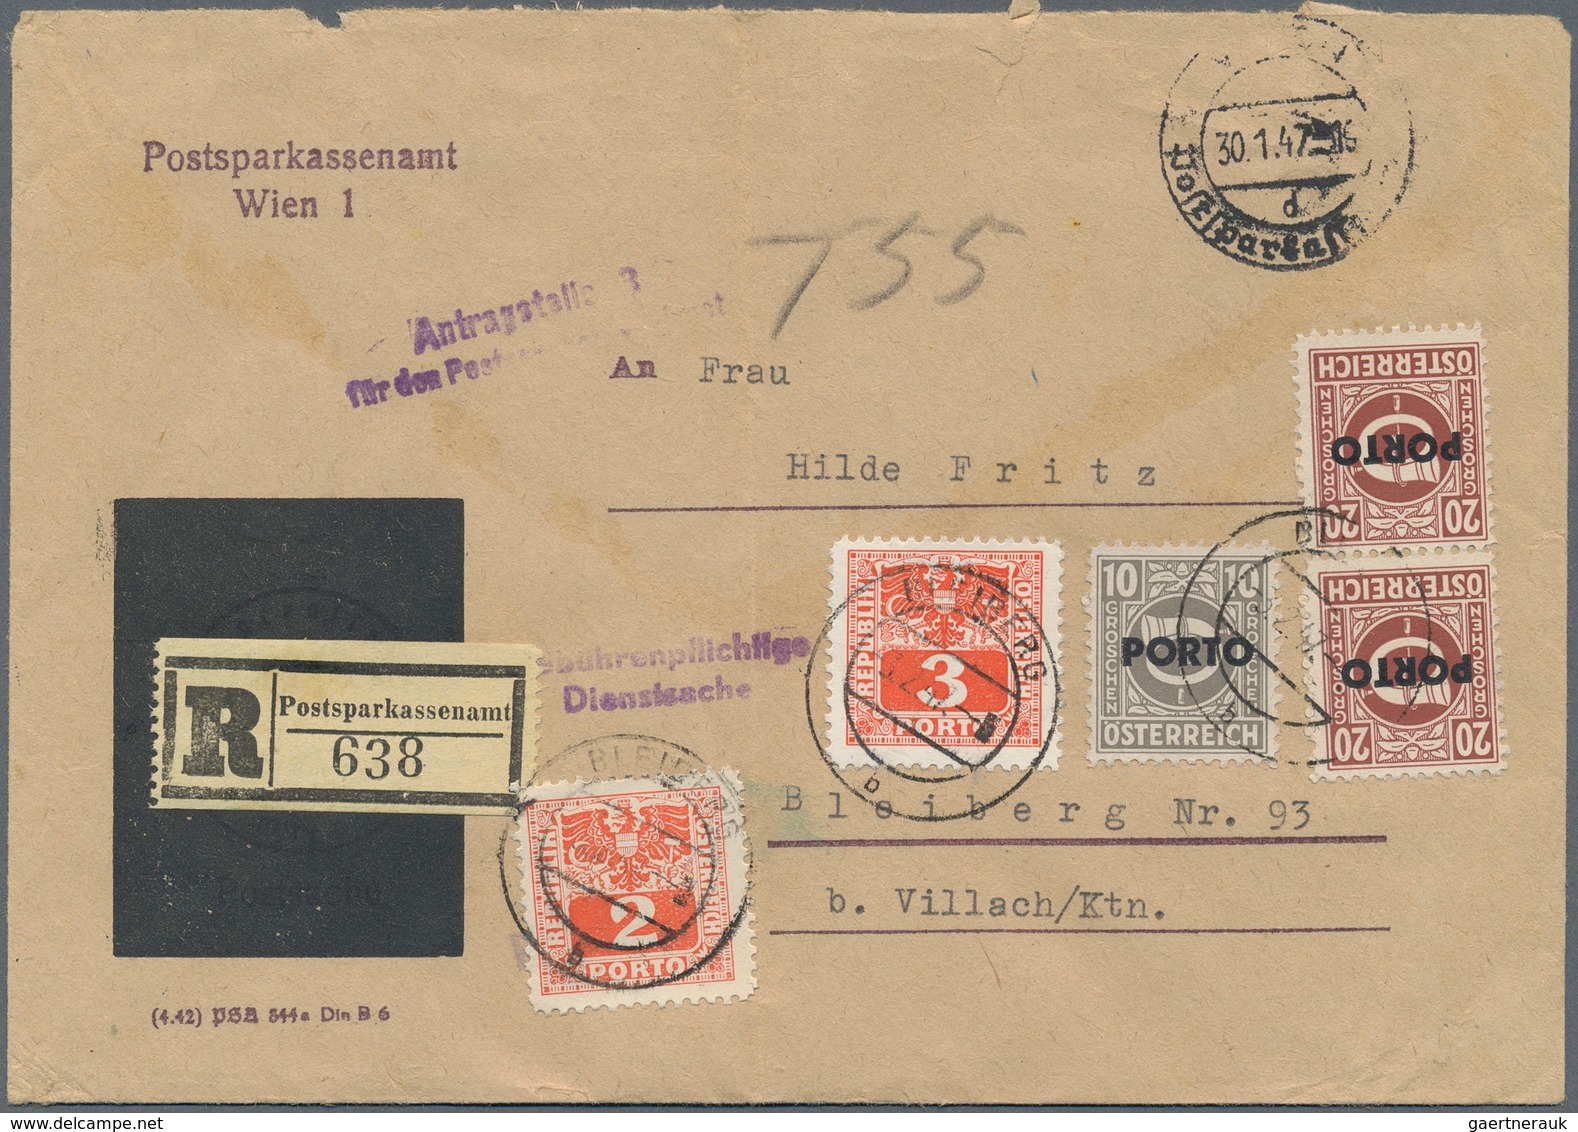 Österreich - Portomarken: 1947, Eingeschriebener Amtsbrief Von Wien Nach Bleiberg. Die Empfängerin M - Strafport